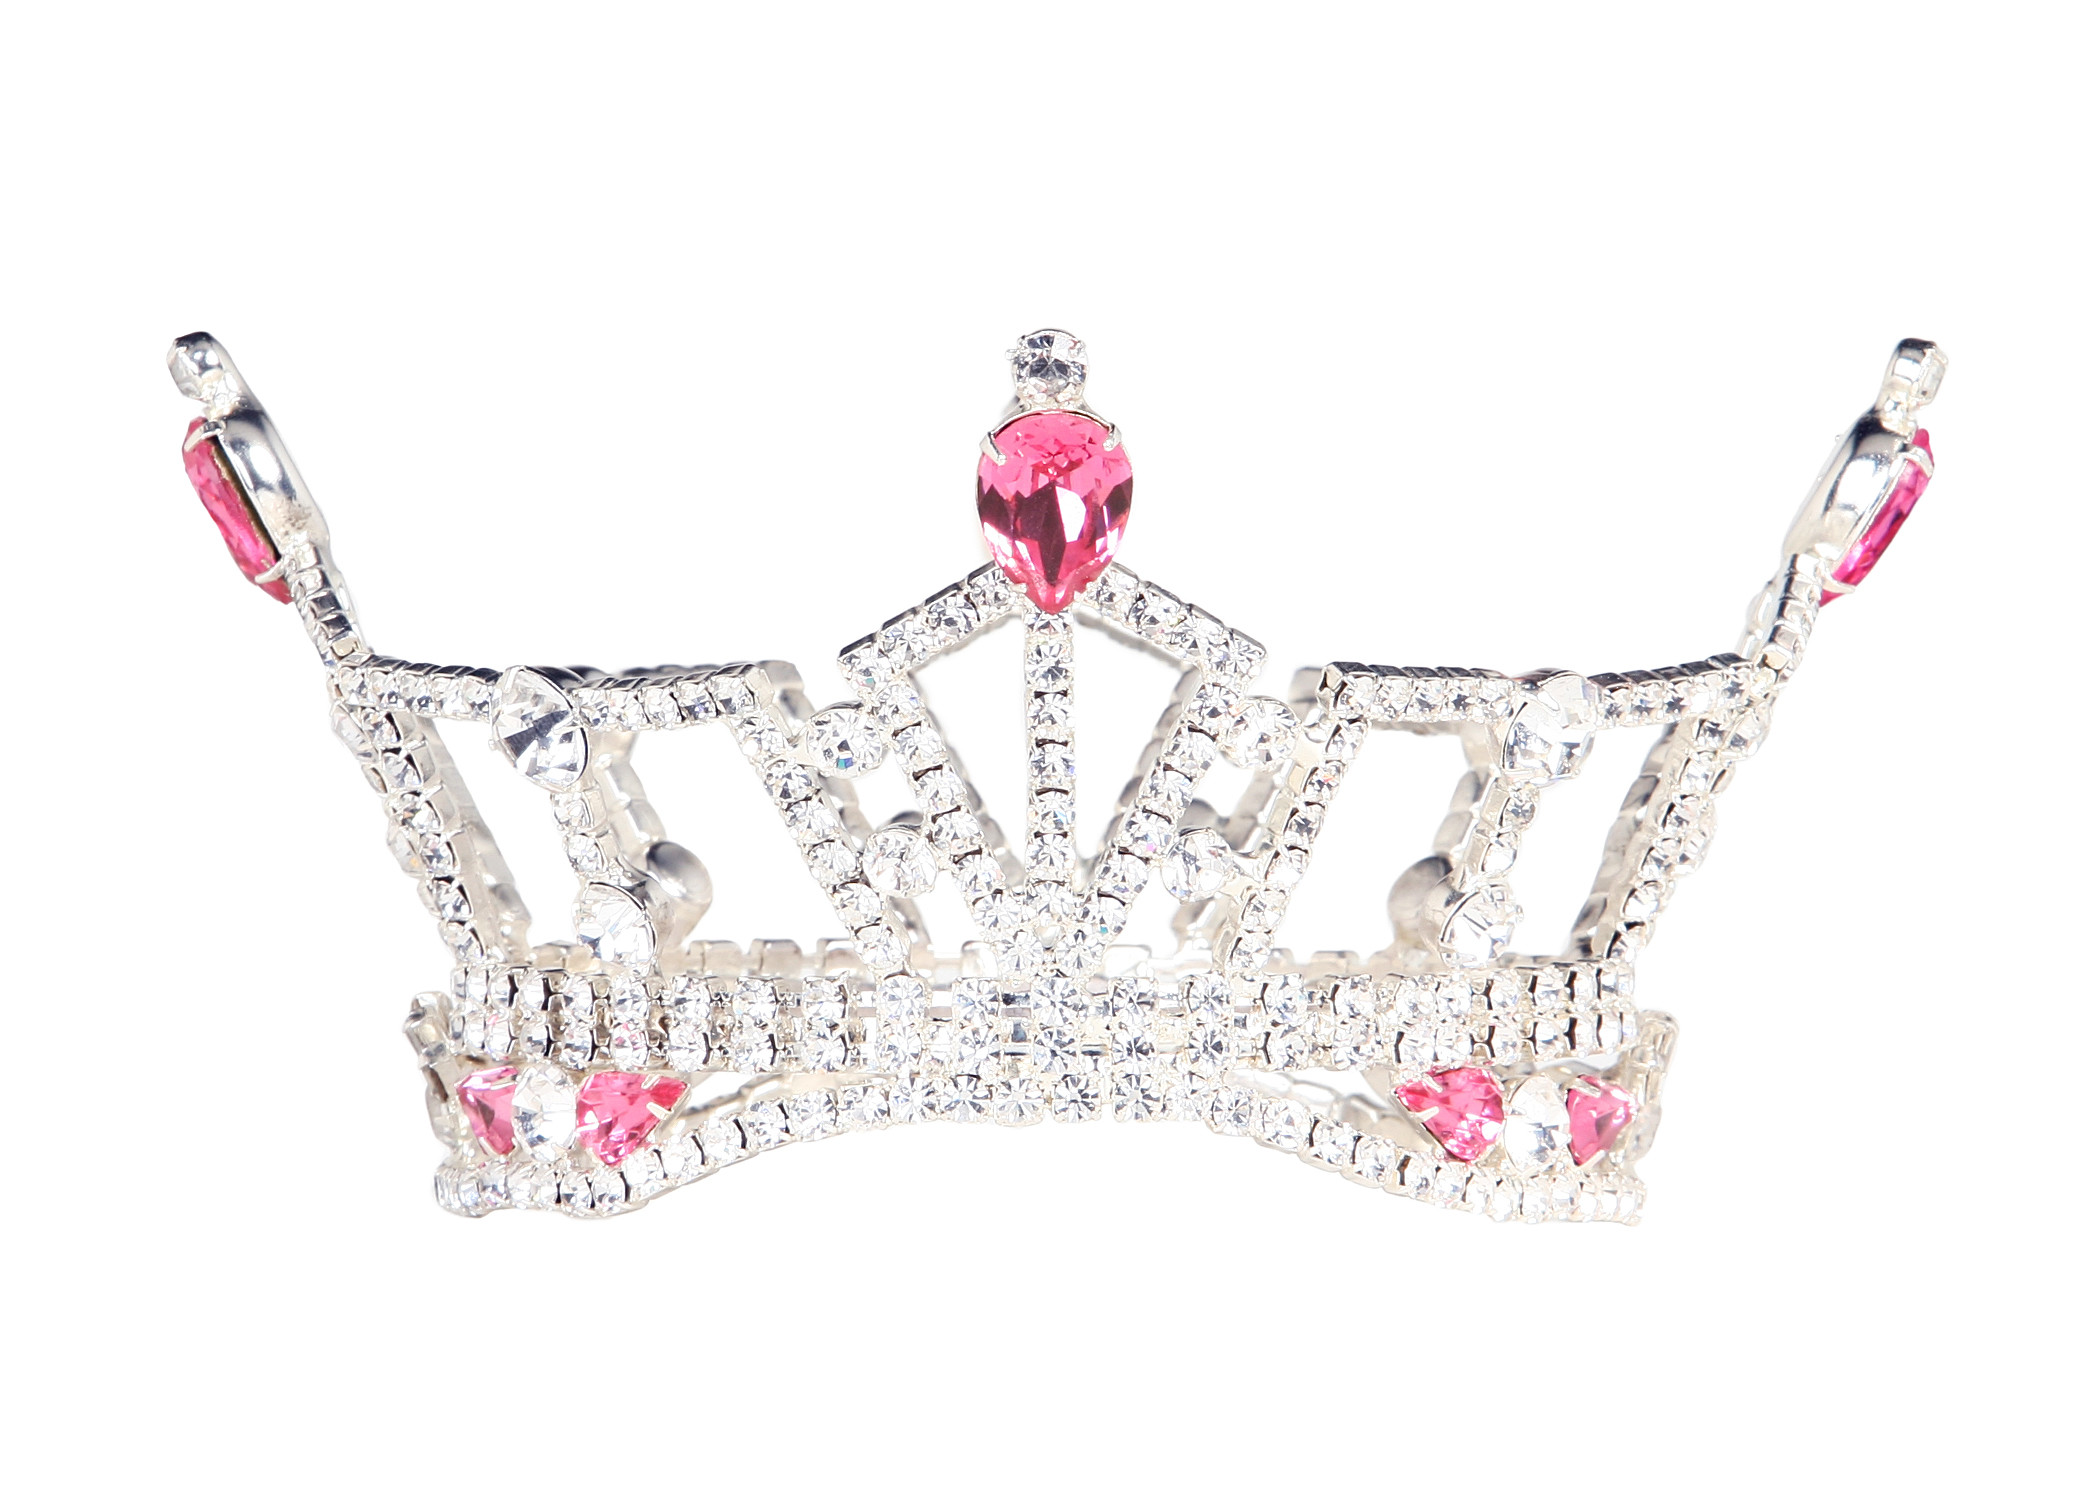 2100x1500 Miss America Outstanding Teen crown